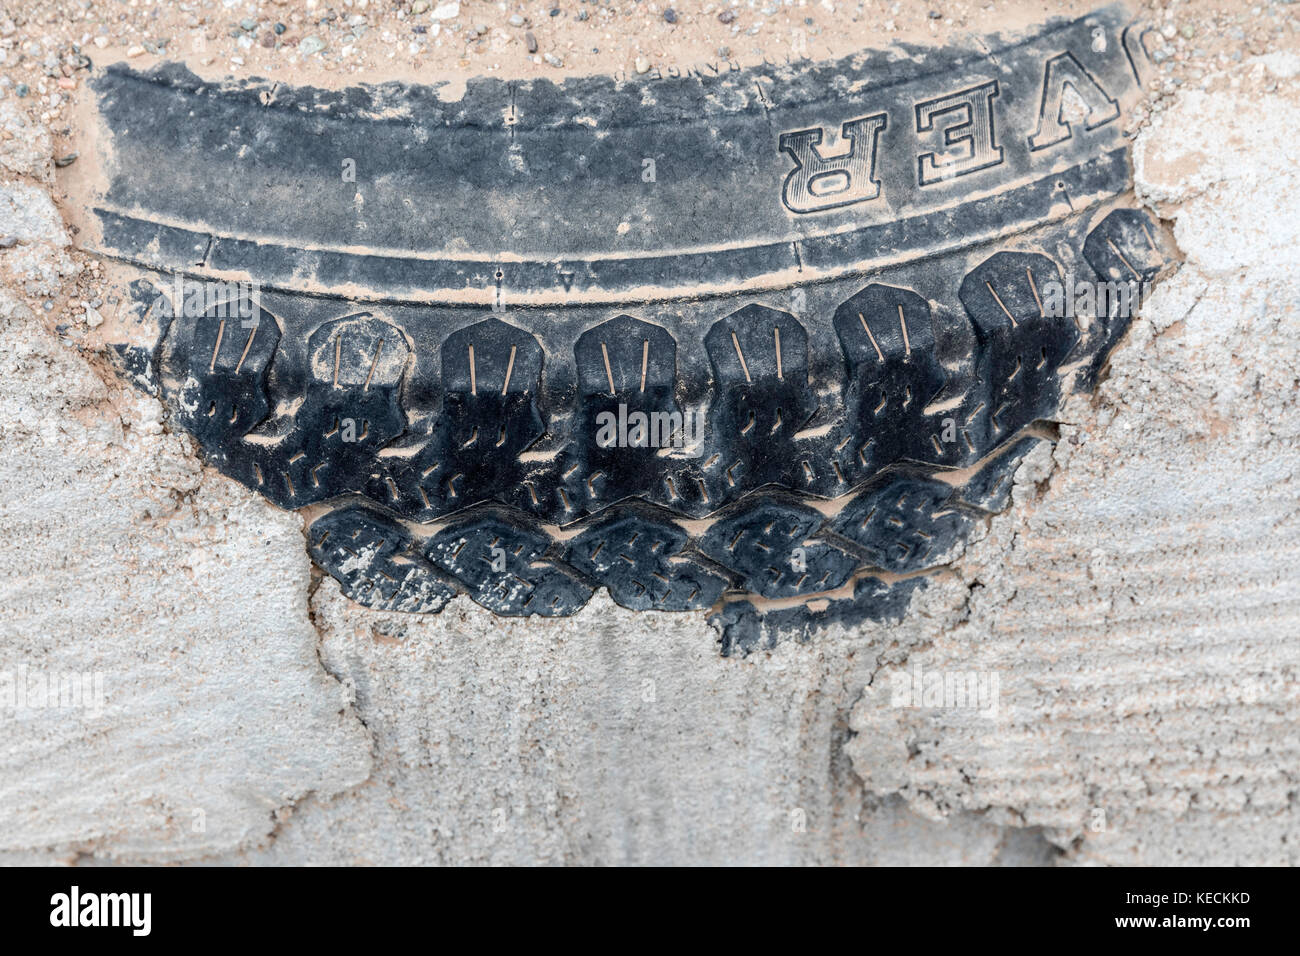 Ancien pneu utilisée pour renforcer la paroi extérieure earthship Earthship mondiale, une plus grande communauté, près de Taos, New Mexico, USA Banque D'Images